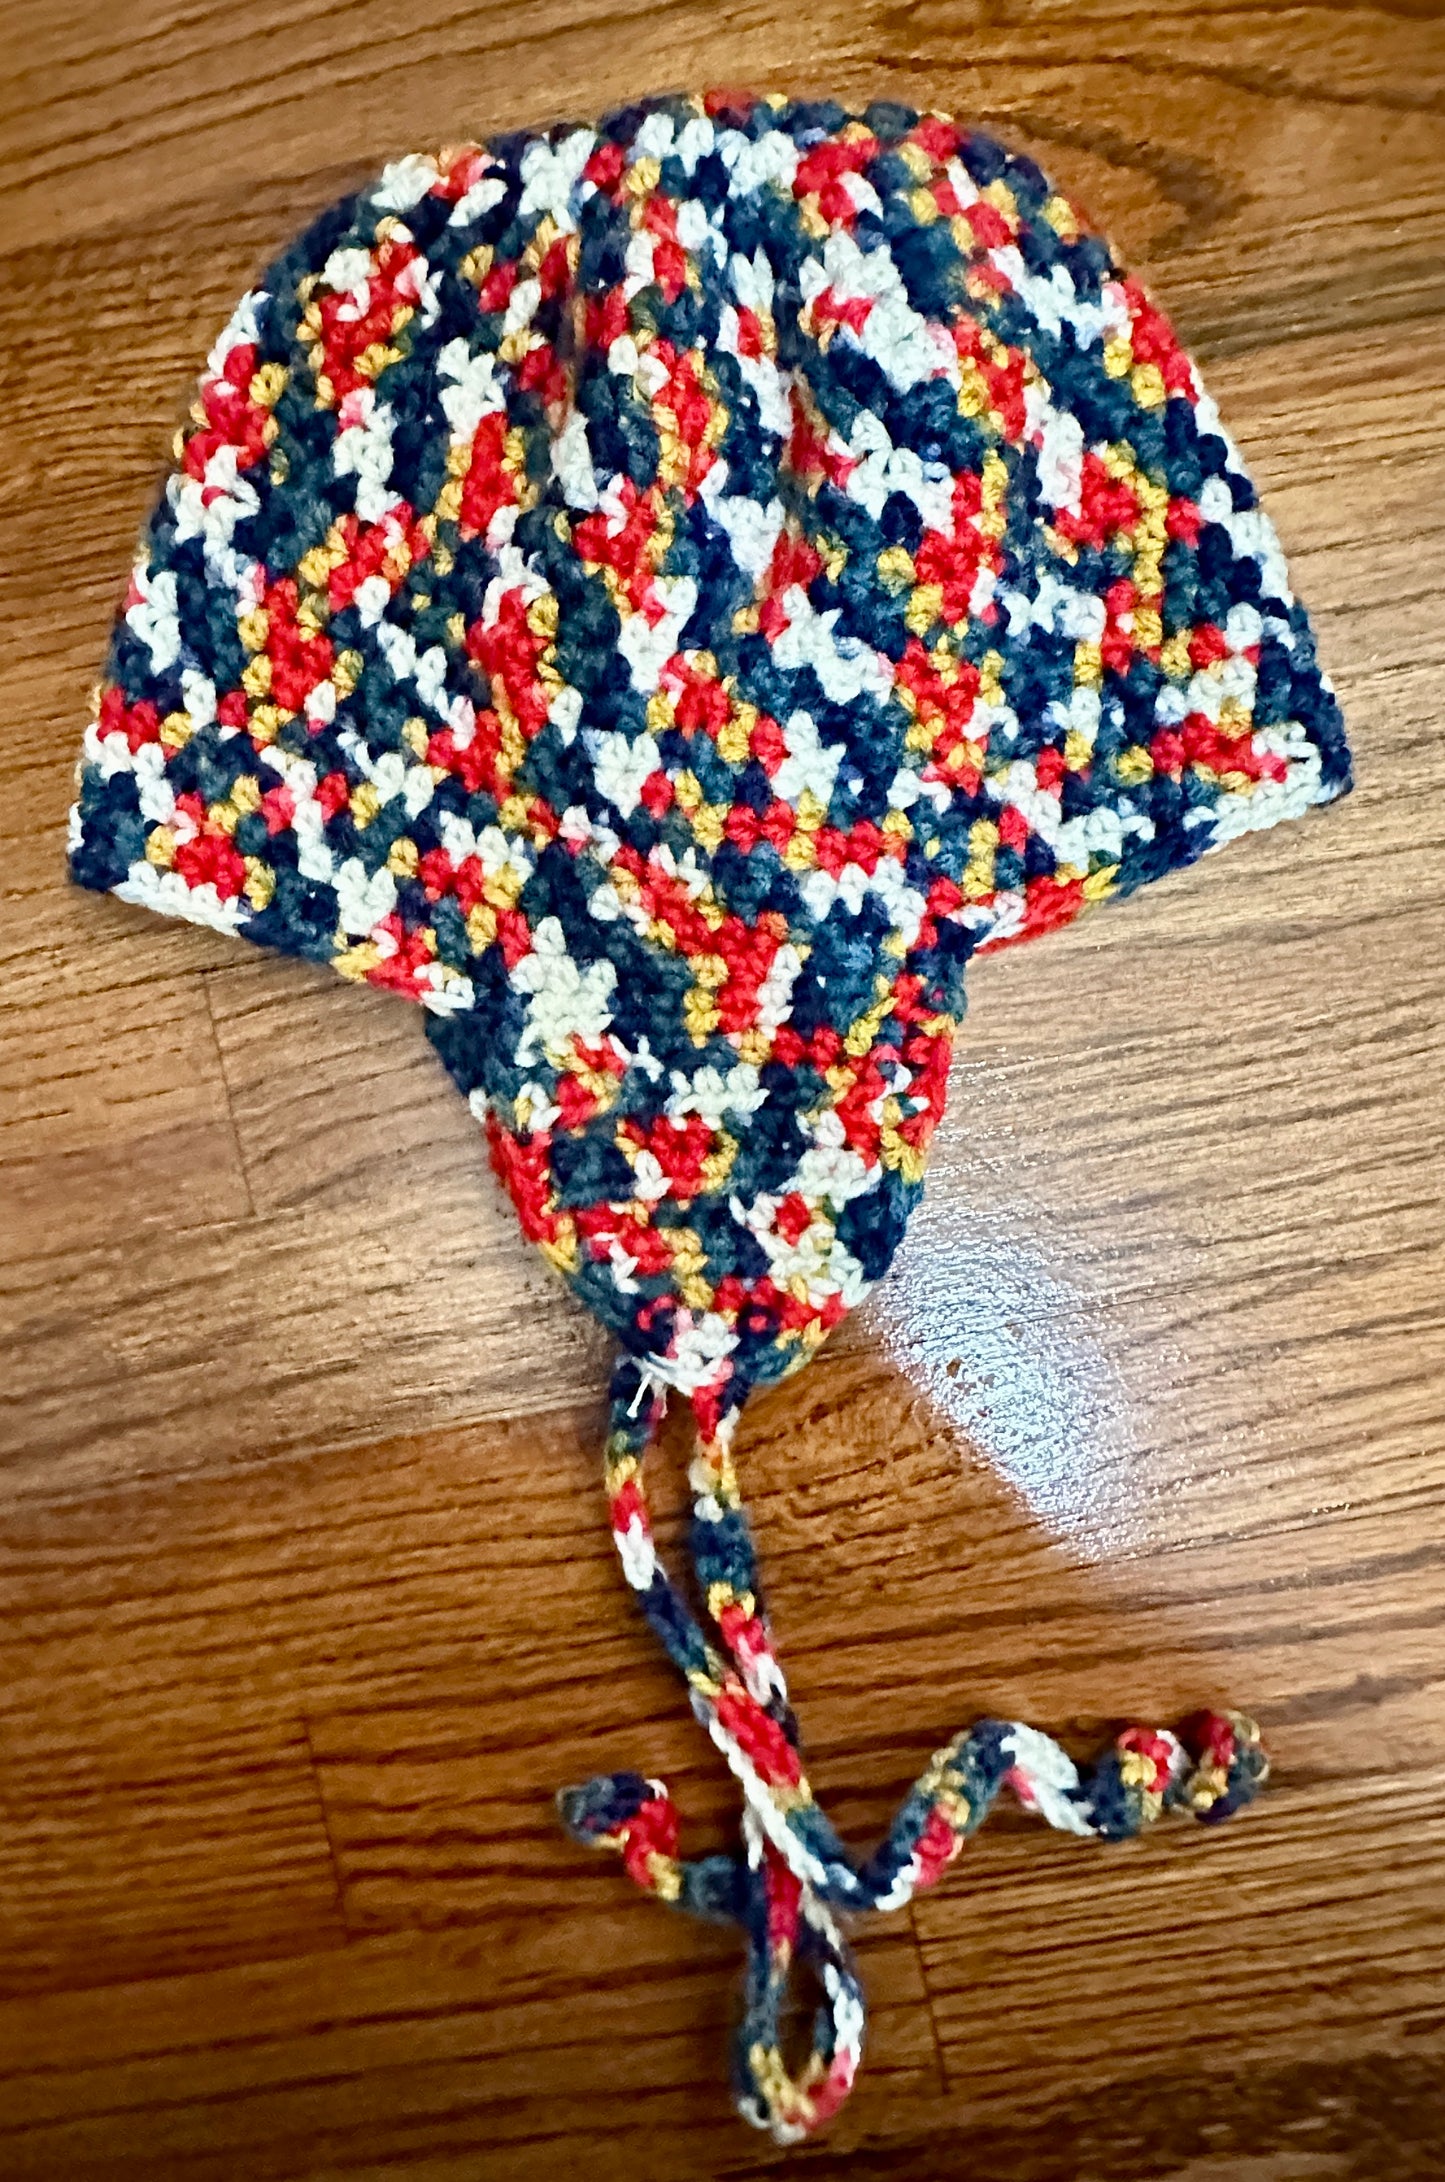 Boy's Flap Ear Hat - Multi-color, 2T, Crocheted by Nancy Stratman